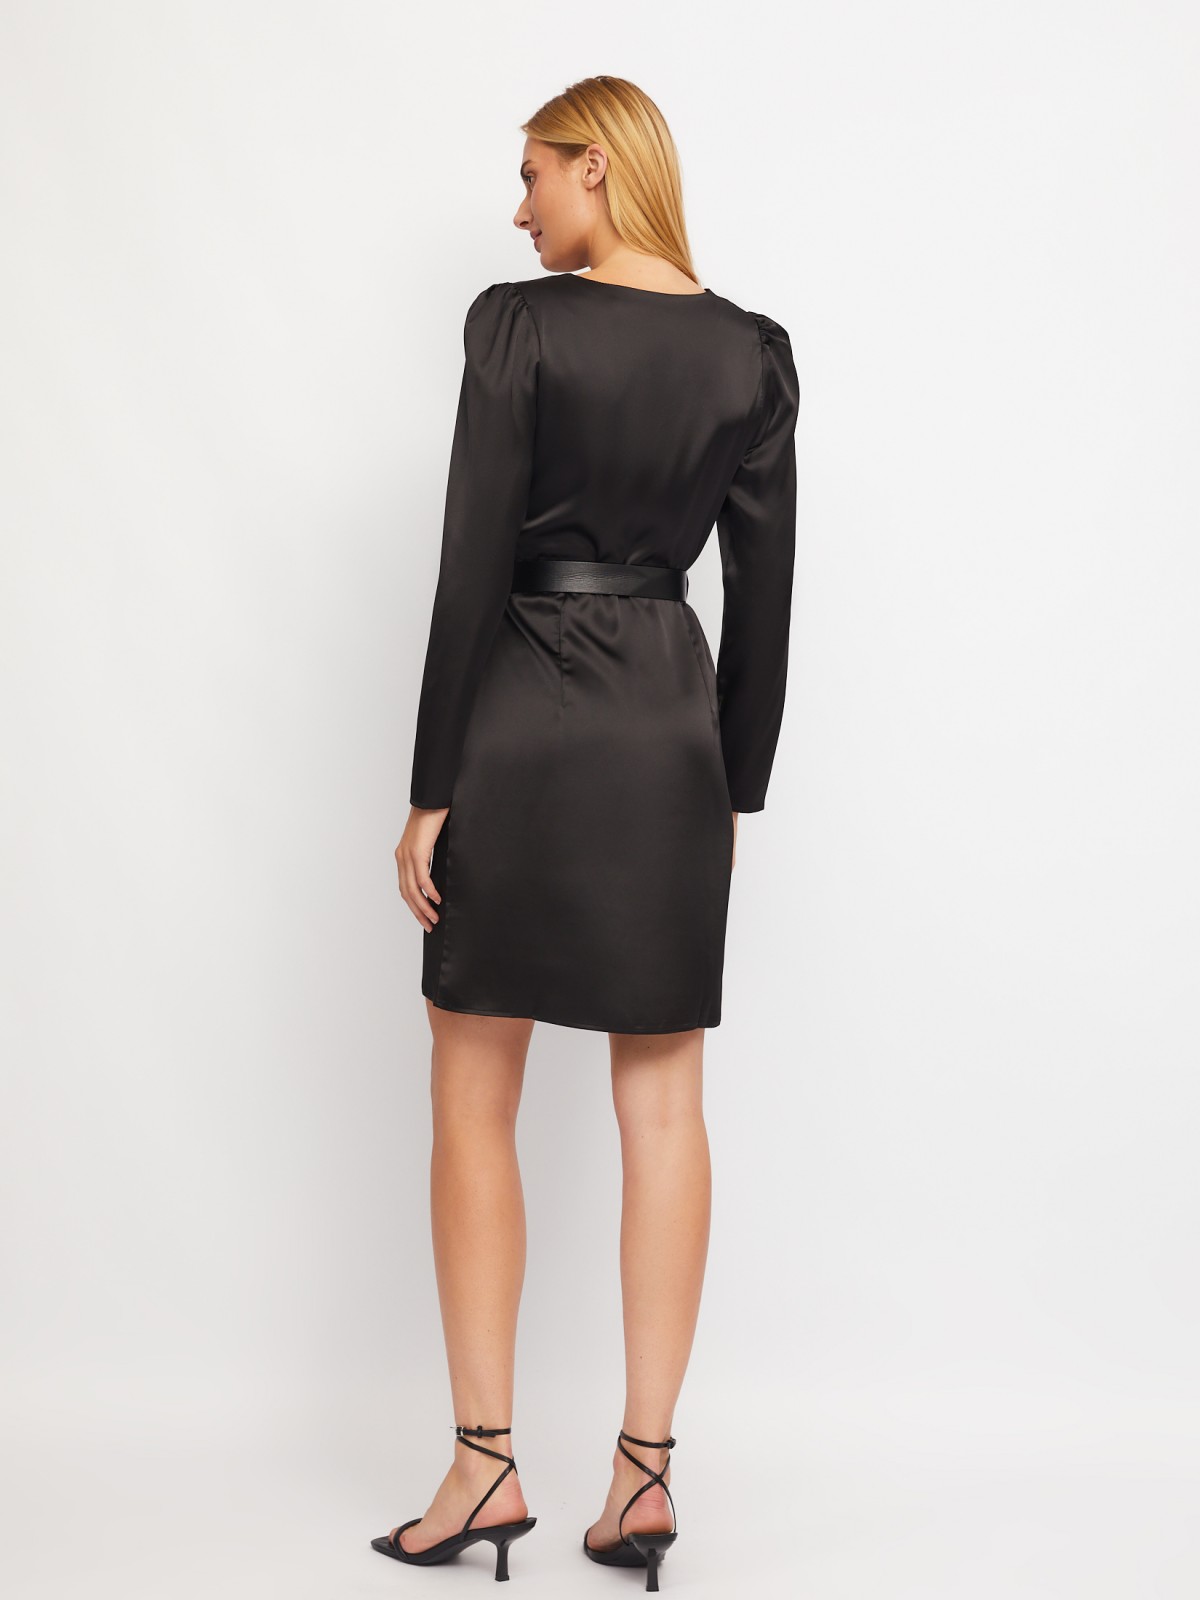 Атласное платье длины мини на запах zolla 024118262183, цвет черный, размер M - фото 6